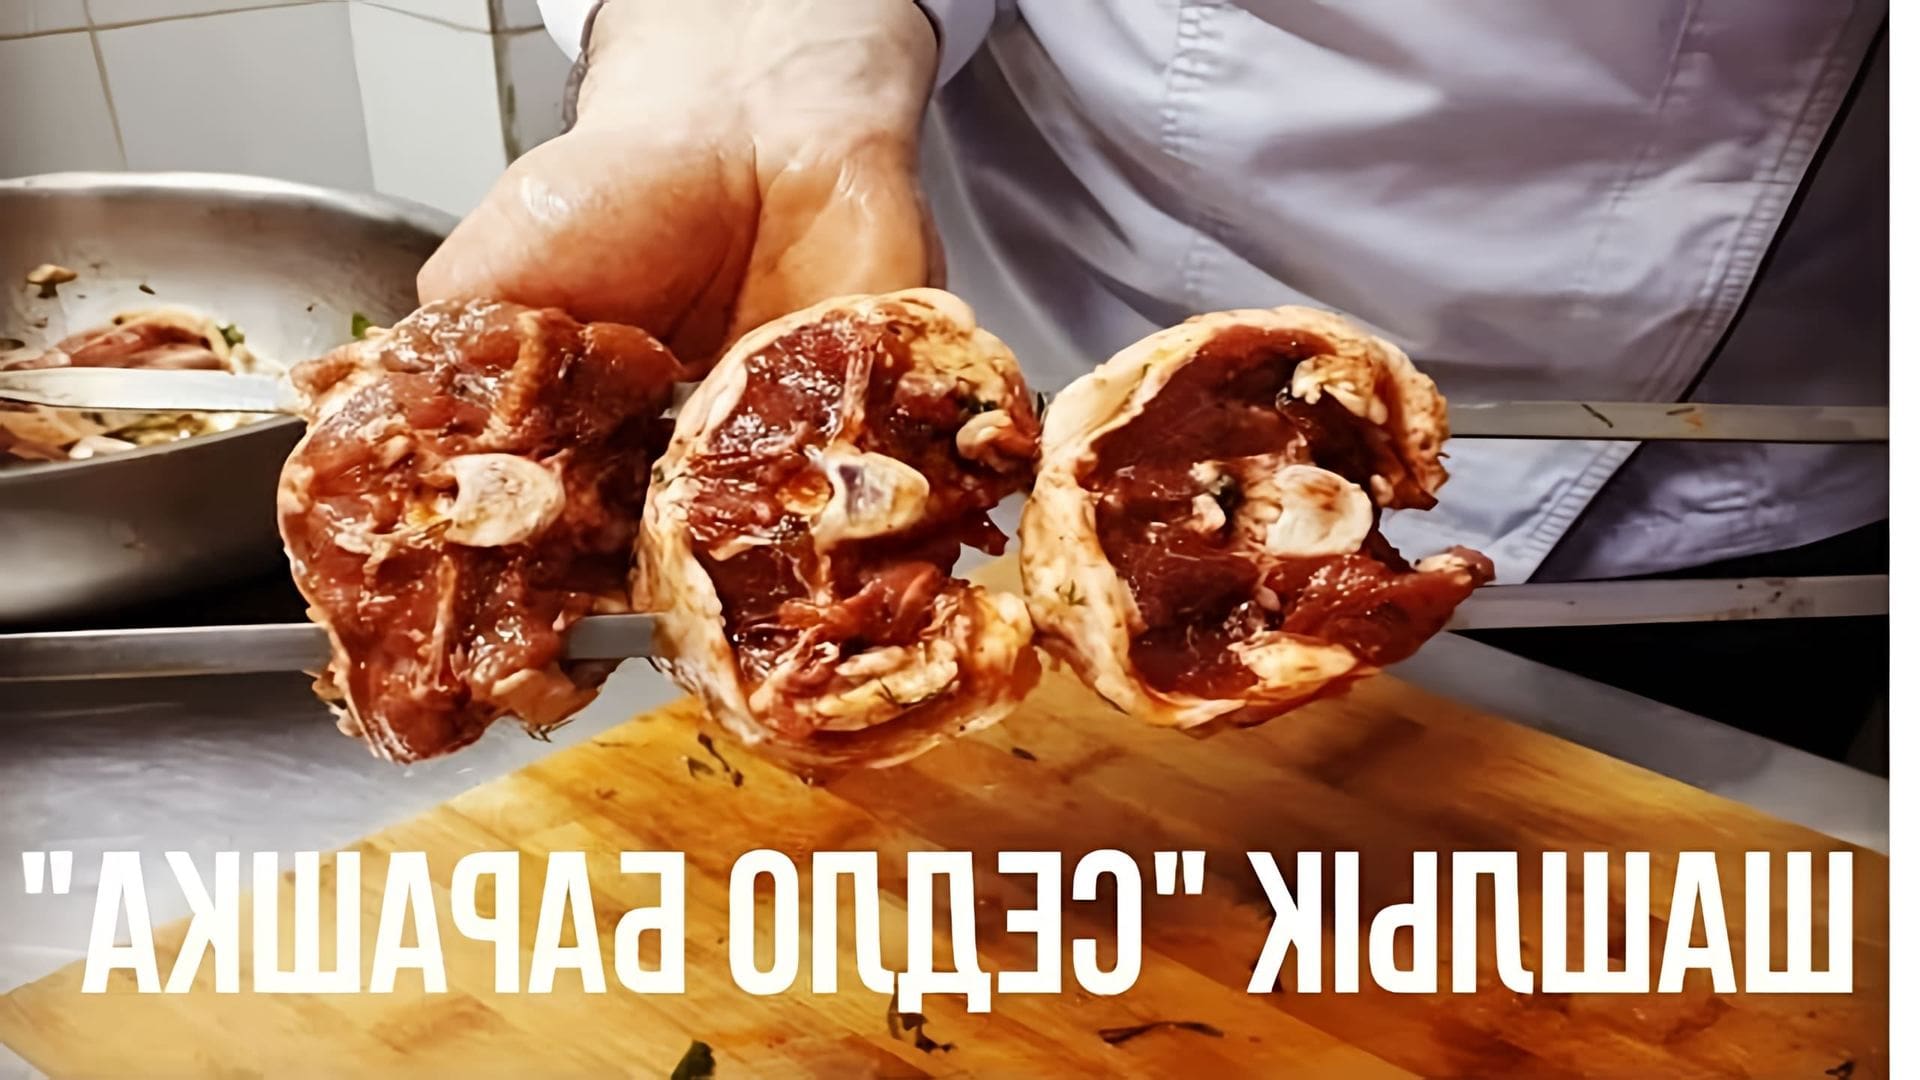 В этом видео демонстрируется рецепт приготовления шашлыка из седла барашка